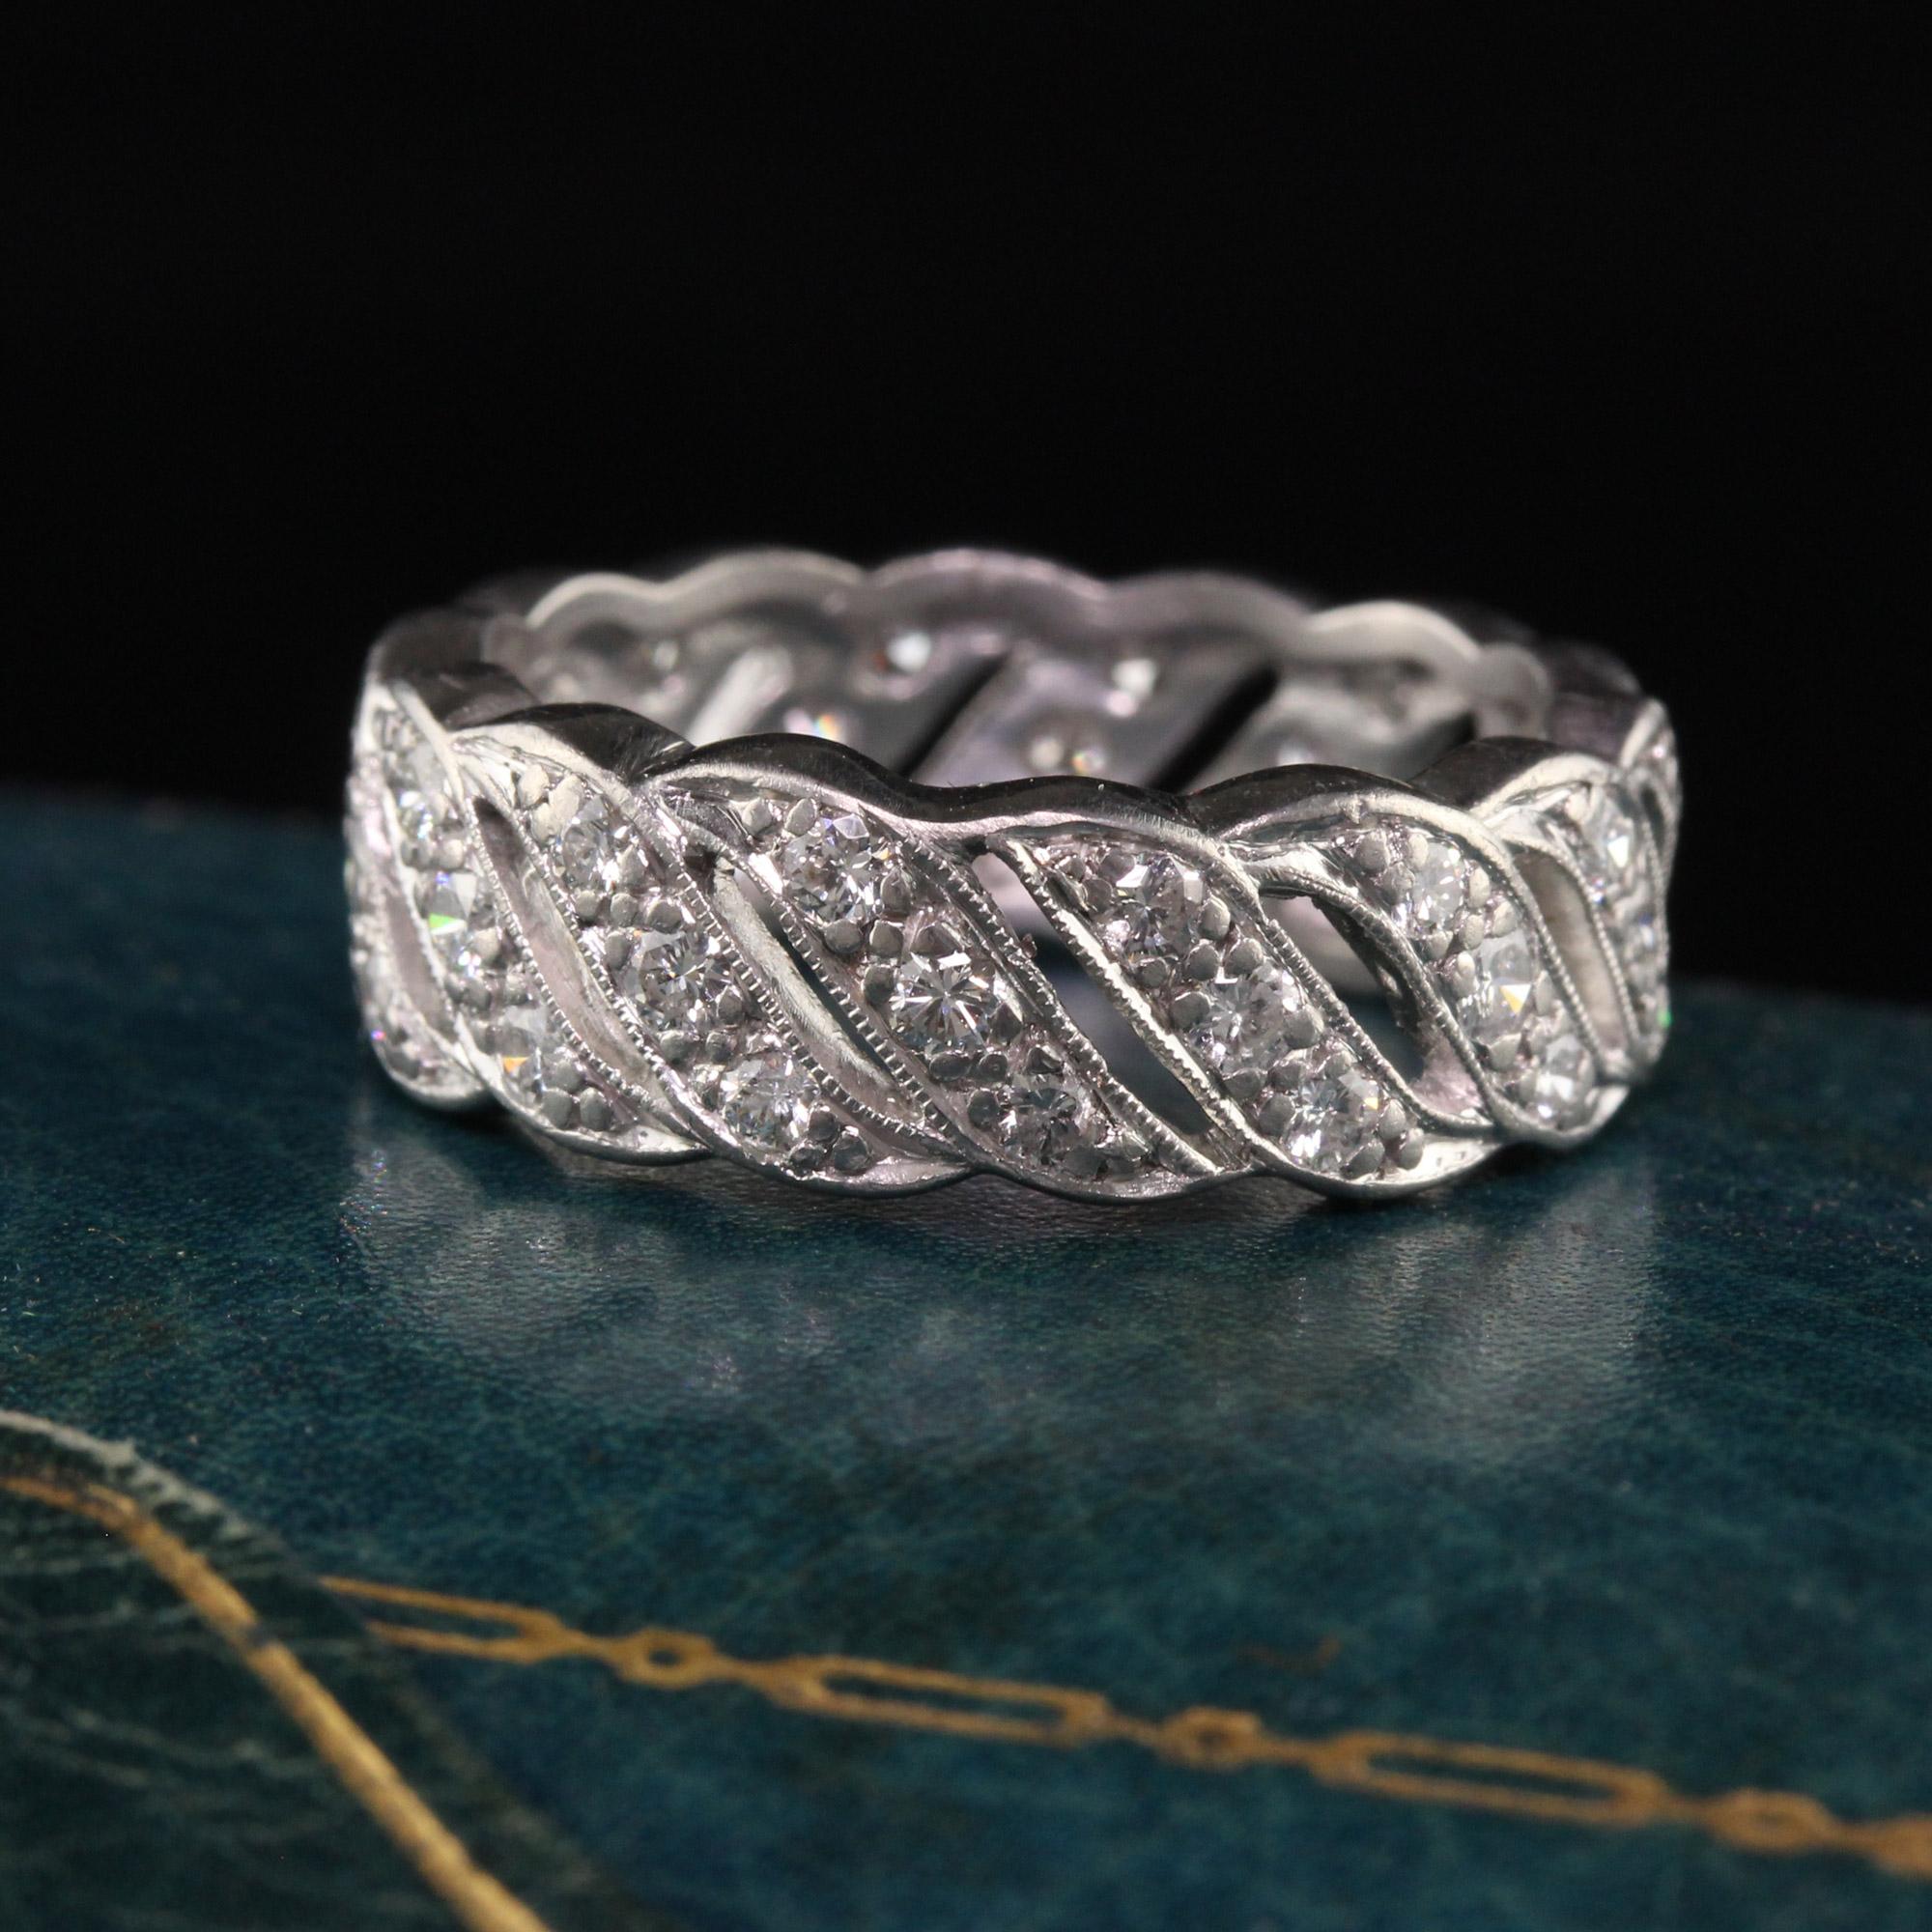 Magnifique alliance en platine Art Déco antique avec diamants - Taille 6. Cette incroyable alliance est fabriquée en platine. Des diamants sont sertis en forme de vague tout autour de l'anneau.

Article #R1313

Métal : Platine

Poids : 7